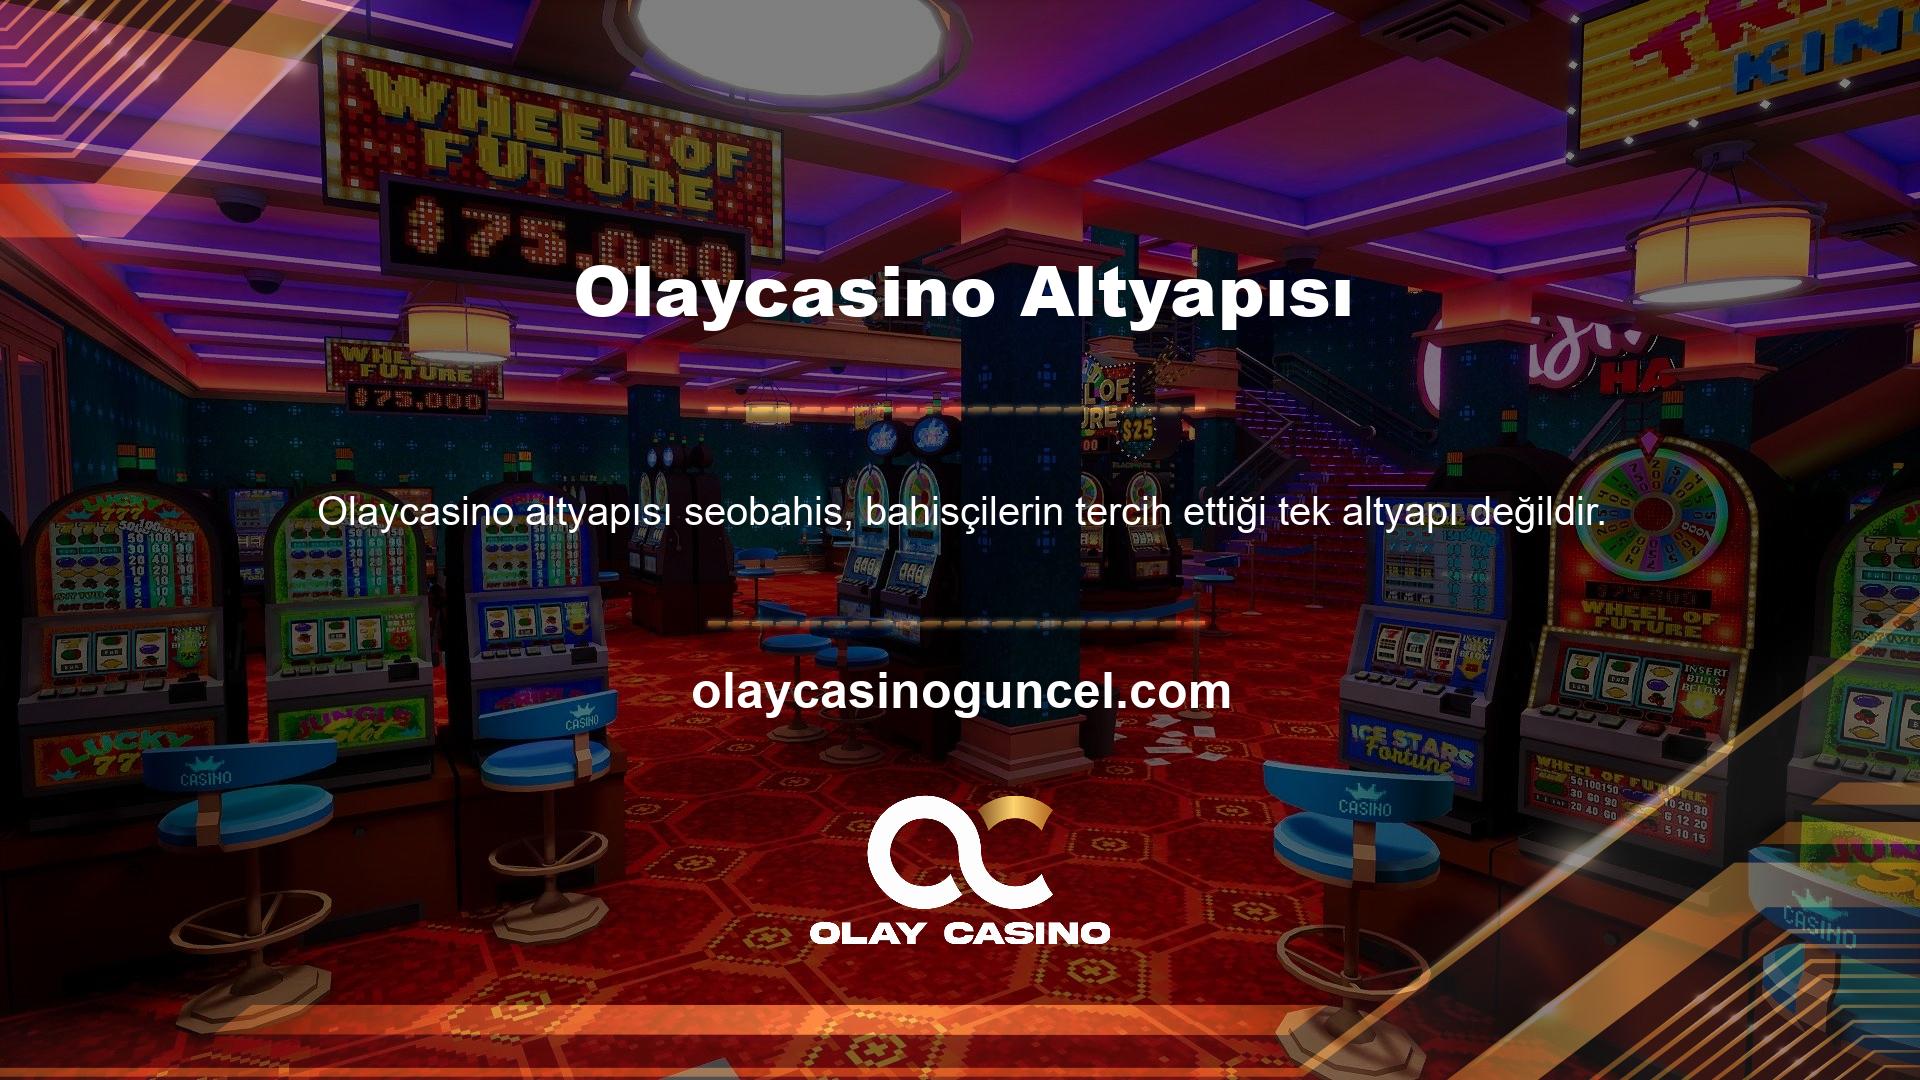 Olaycasino bahis sitesi, kaliteli altyapısı sayesinde hızlı bahis seçeneklerini ve binlerce farklı casino oyununu destekleyen sitelerden biridir